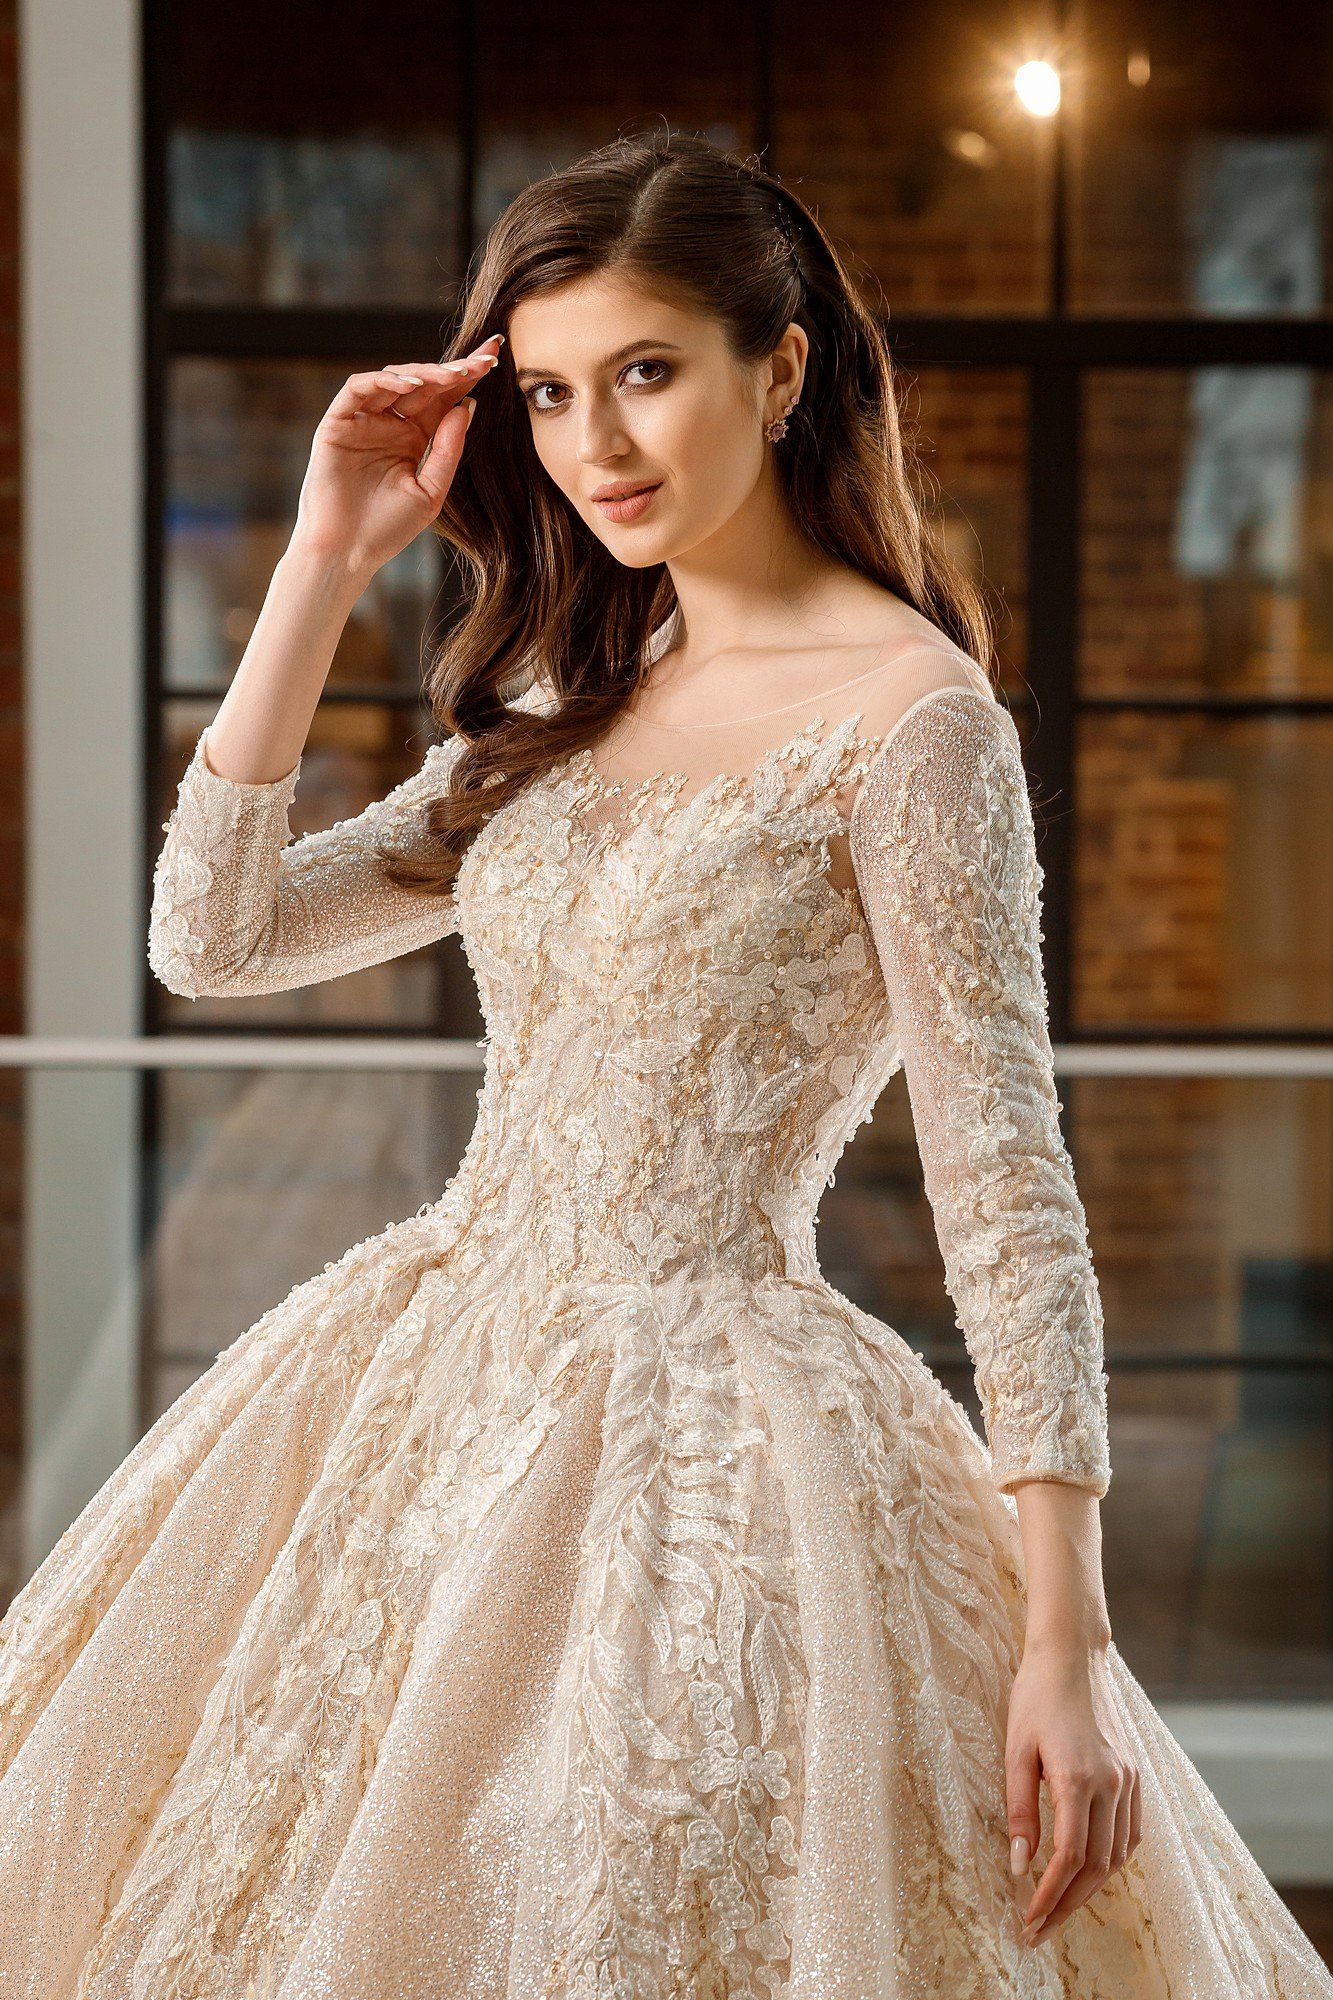 модель, девушка, свадебное платье, роскошь, fasion, Анастасия Косарева